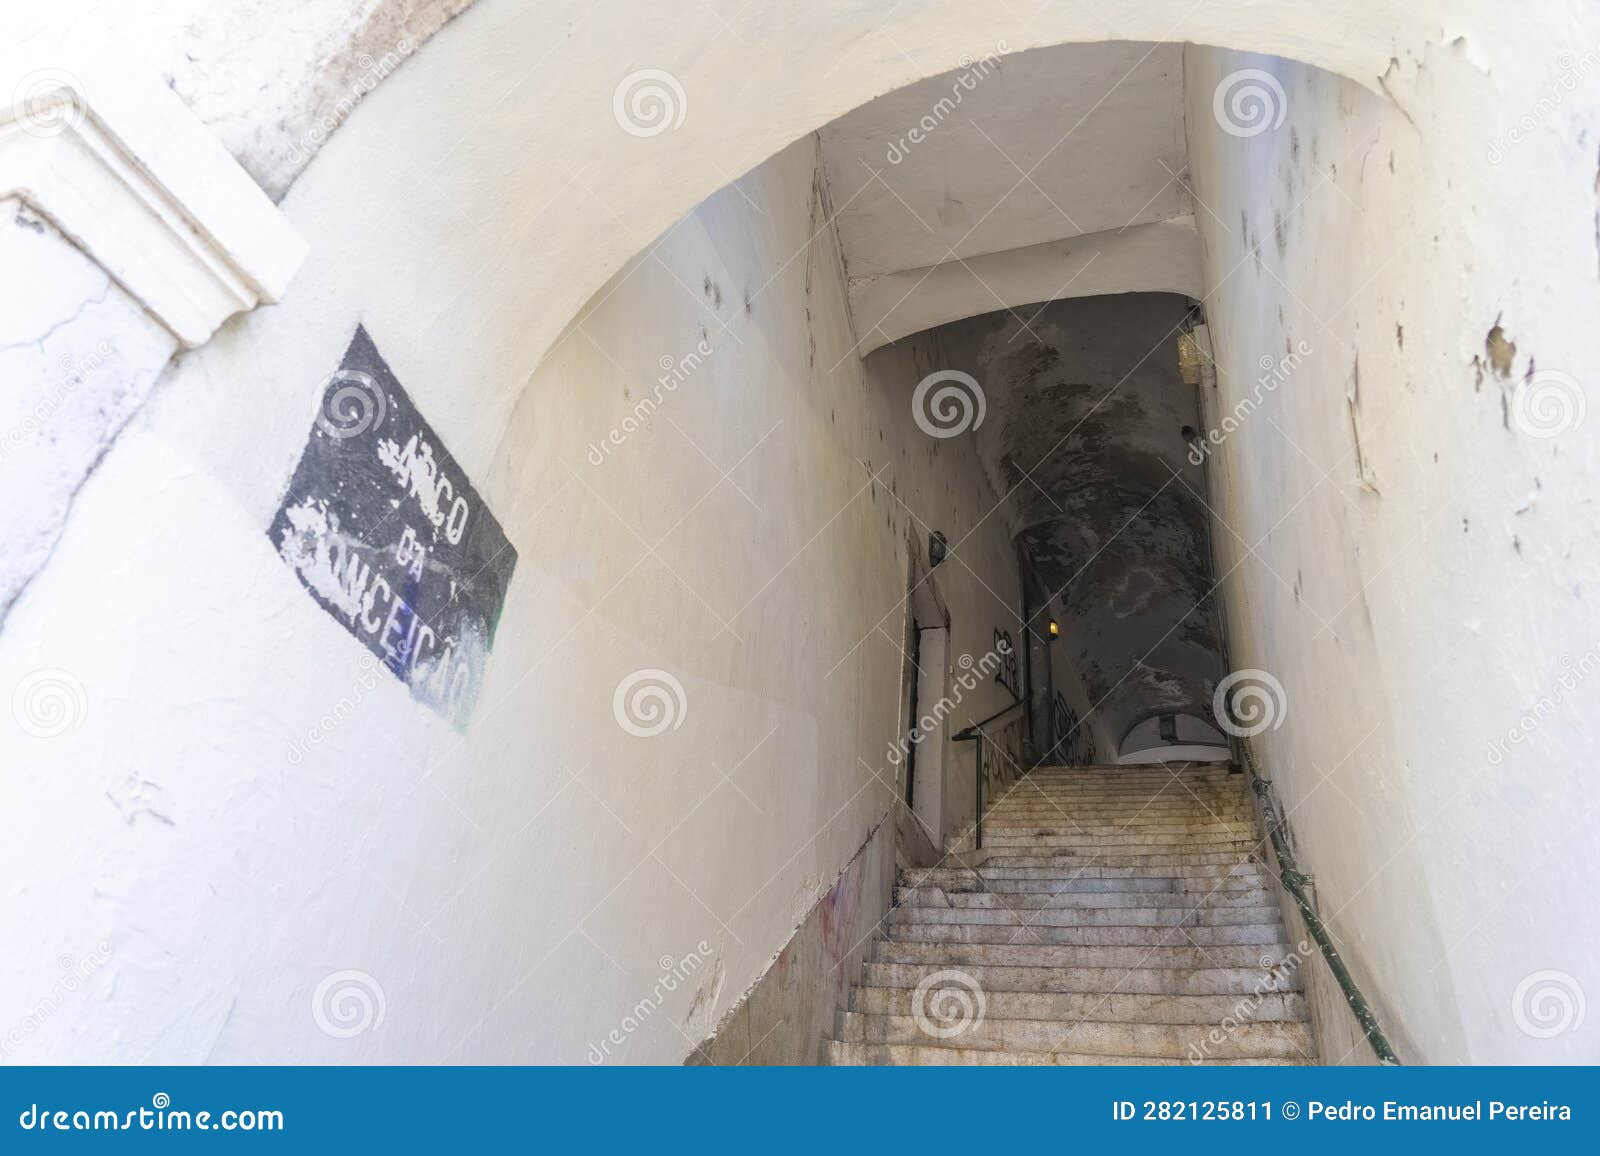 pedestrian access tunnel arco da sloth, or arco da conceiÃ§Ã£o in lisbon